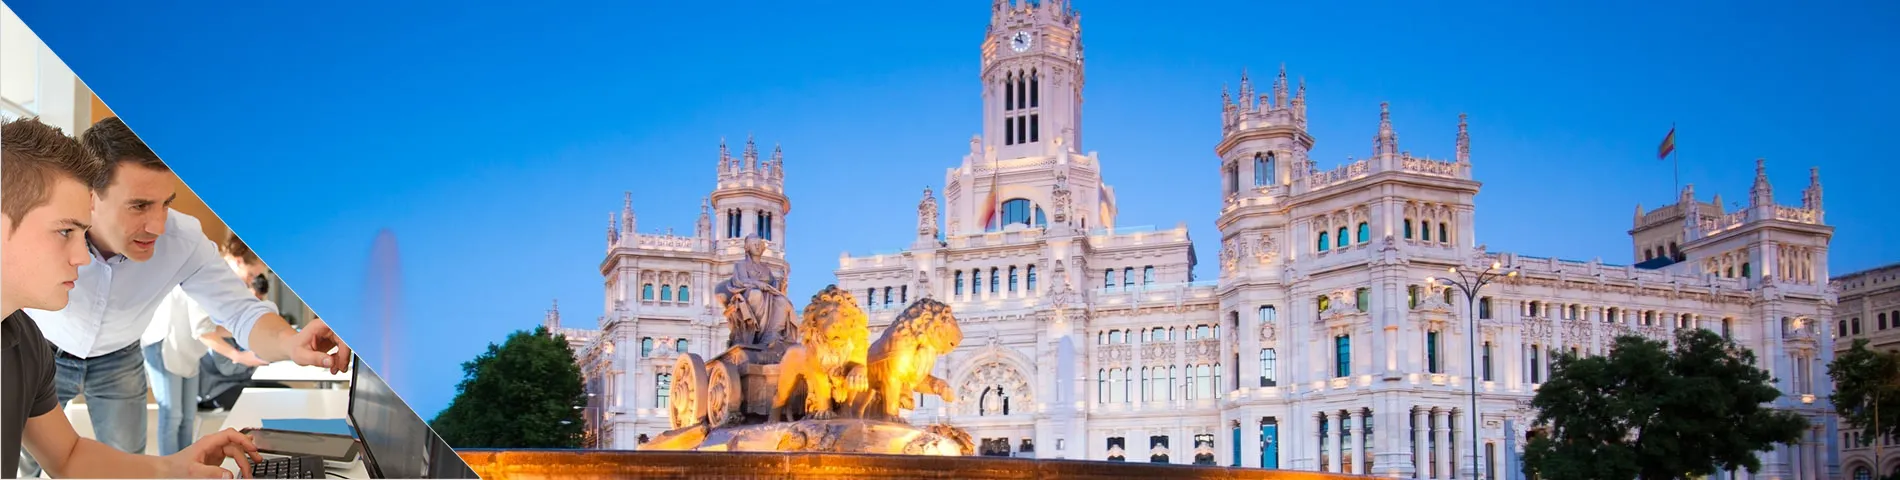 Madrid - Työharjoitteluohjelma